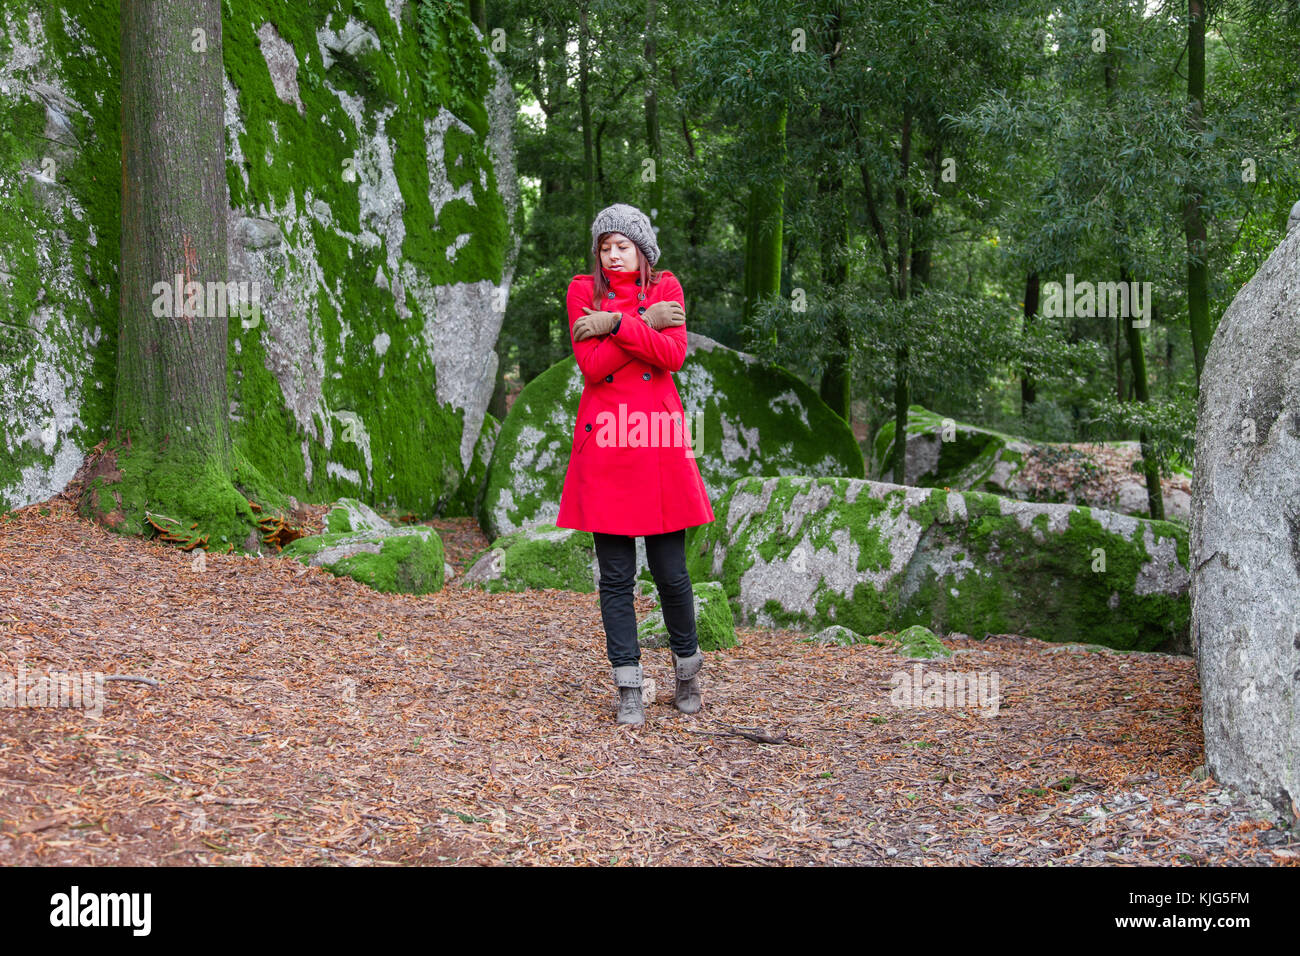 Junge Frau auf einem Wald zittern mit kalten und umarmen sich Holding verloren, trug einen roten Mantel oder Jacke, eine Mütze und Handschuhe während der Fal Stockfoto